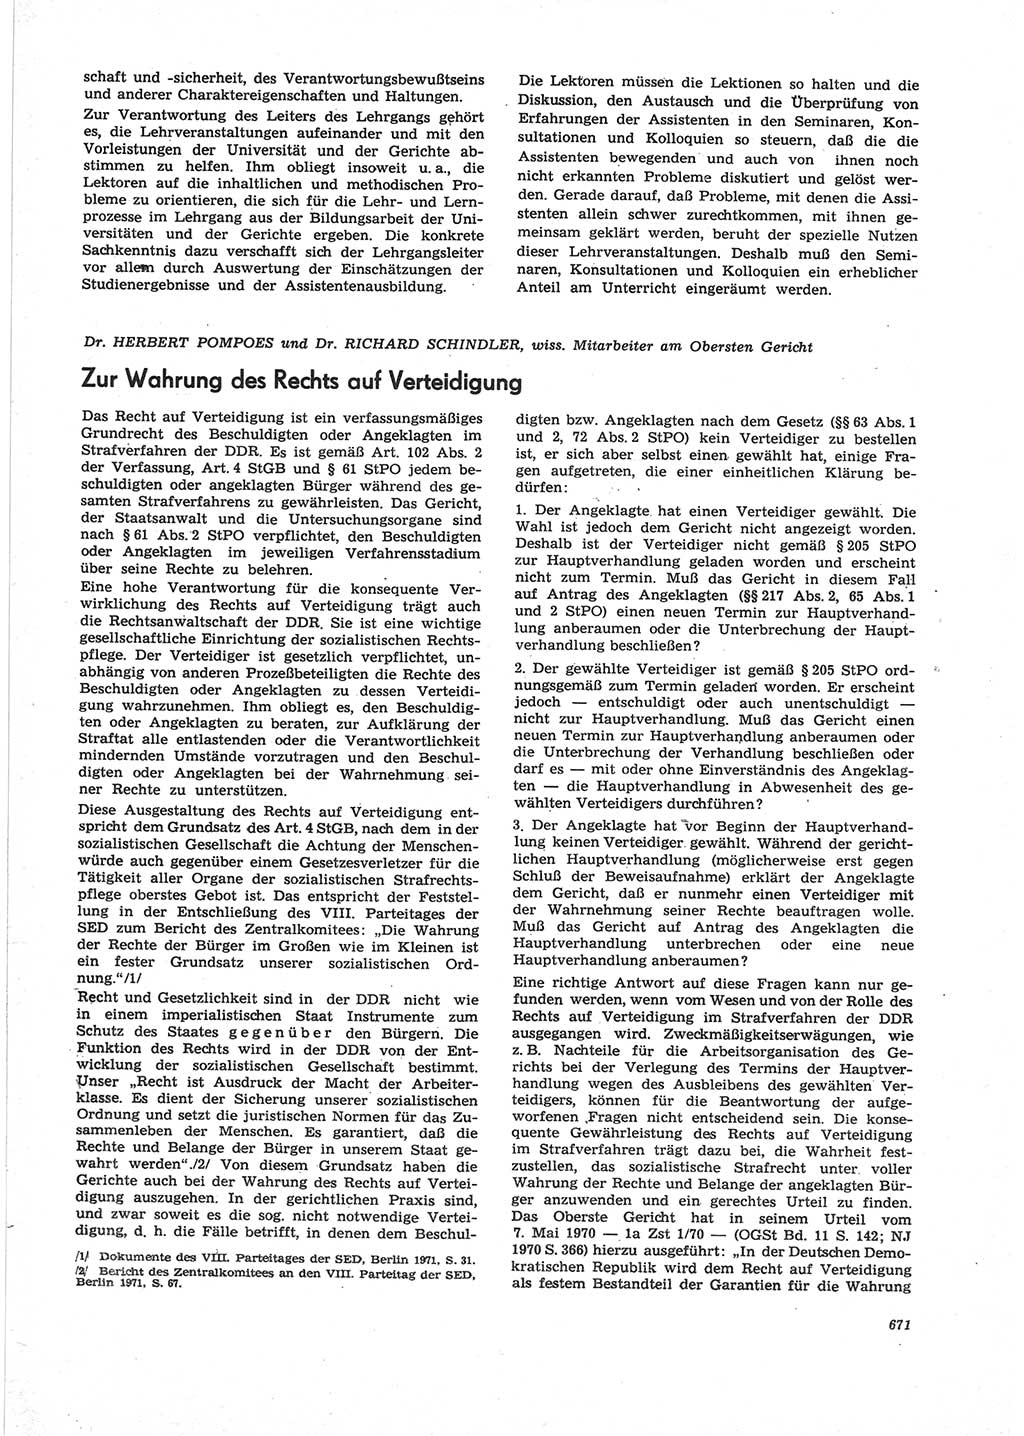 Neue Justiz (NJ), Zeitschrift für Recht und Rechtswissenschaft [Deutsche Demokratische Republik (DDR)], 25. Jahrgang 1971, Seite 671 (NJ DDR 1971, S. 671)